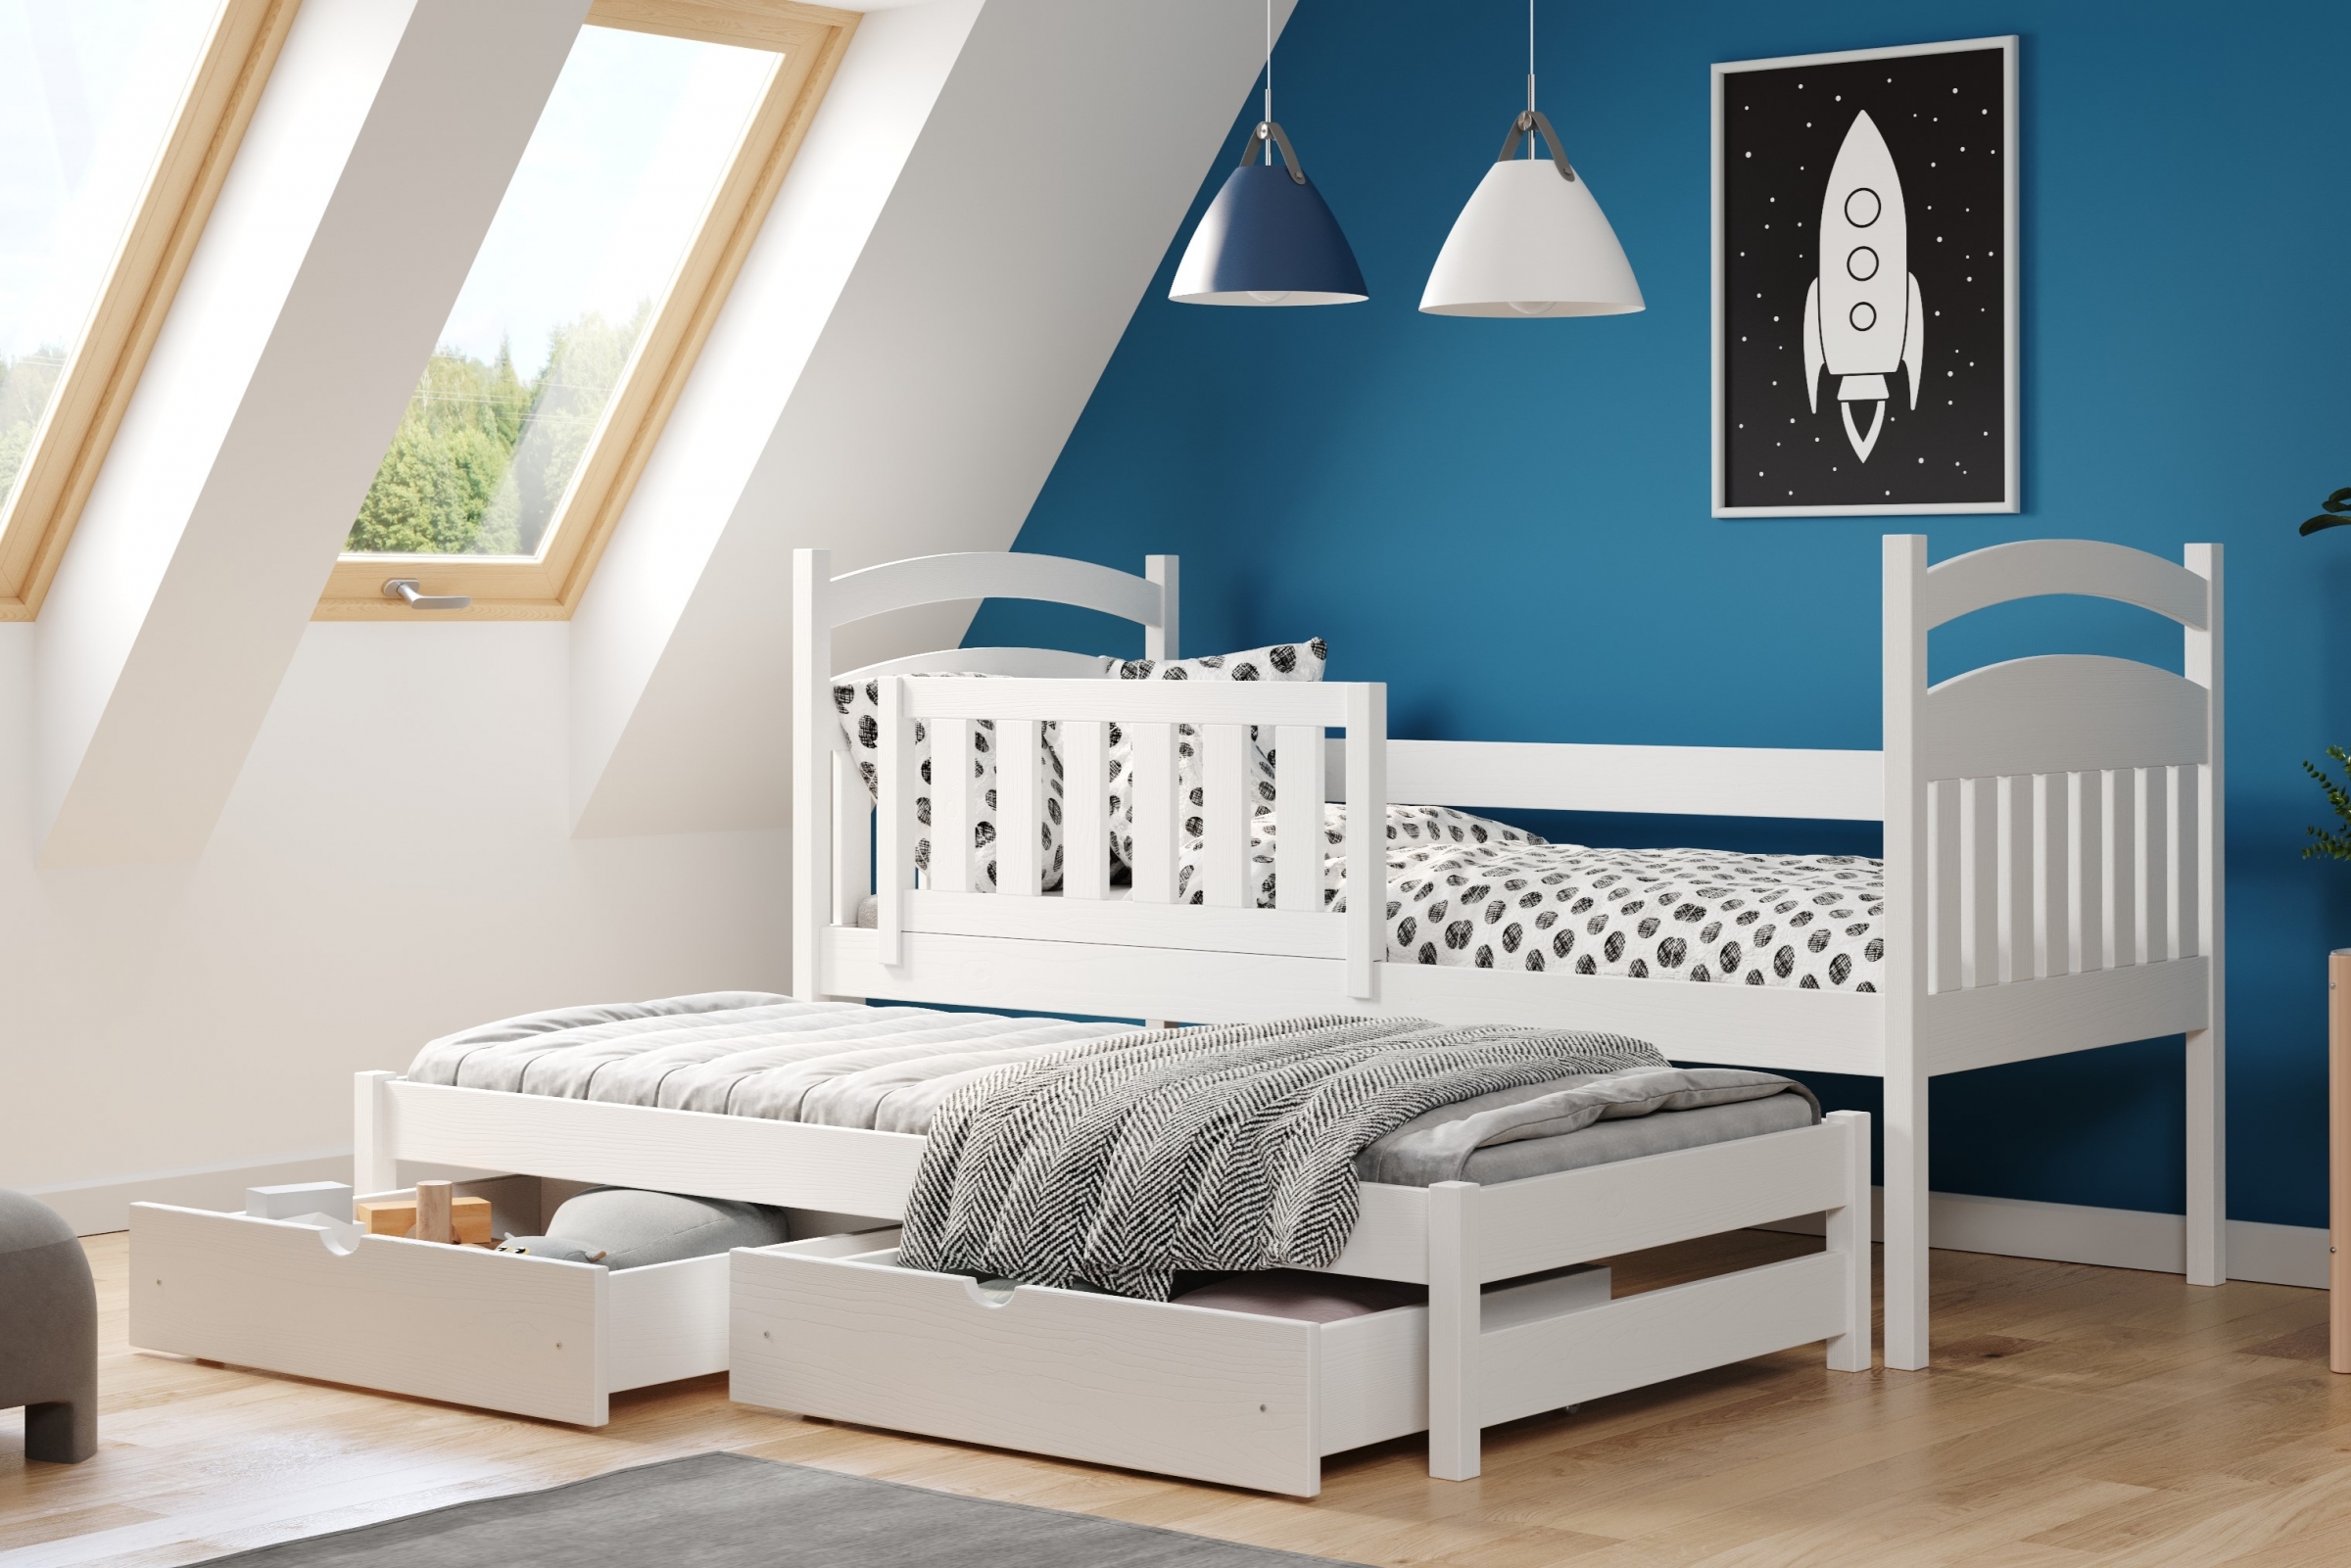 Łóżko dziecięce parterowe wysuwane Amely - biały, 90x200 Łóżko dziecięce parterowe wyjazdowe Amely - kolor biały - aranżacja